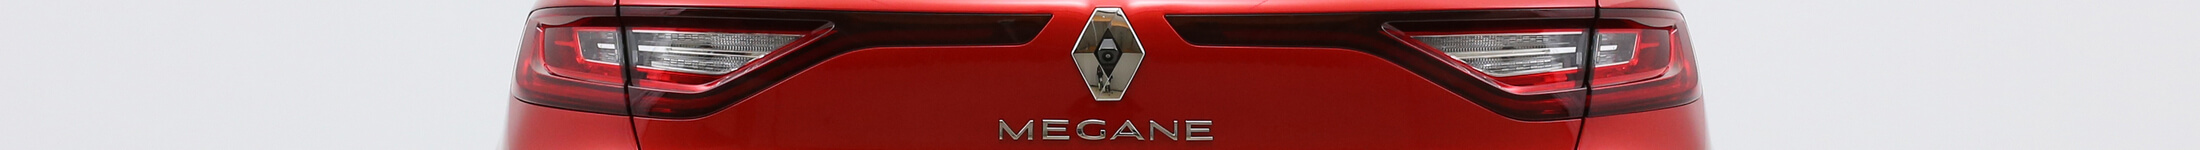 Renault Megane na abonament - detal znaczka i piękna linia świateł